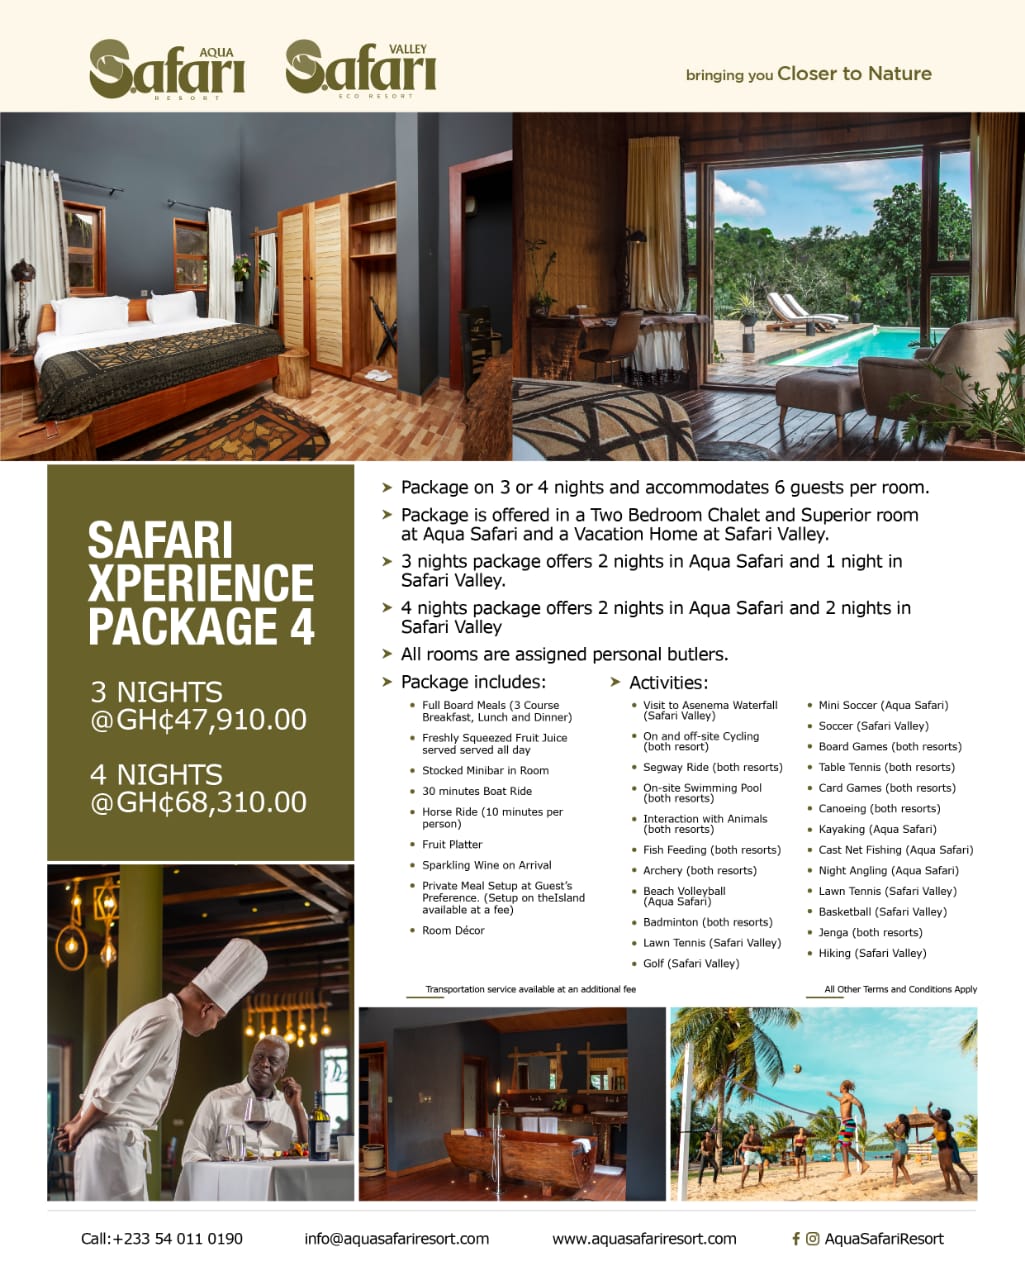 aqua safari resort prices per night